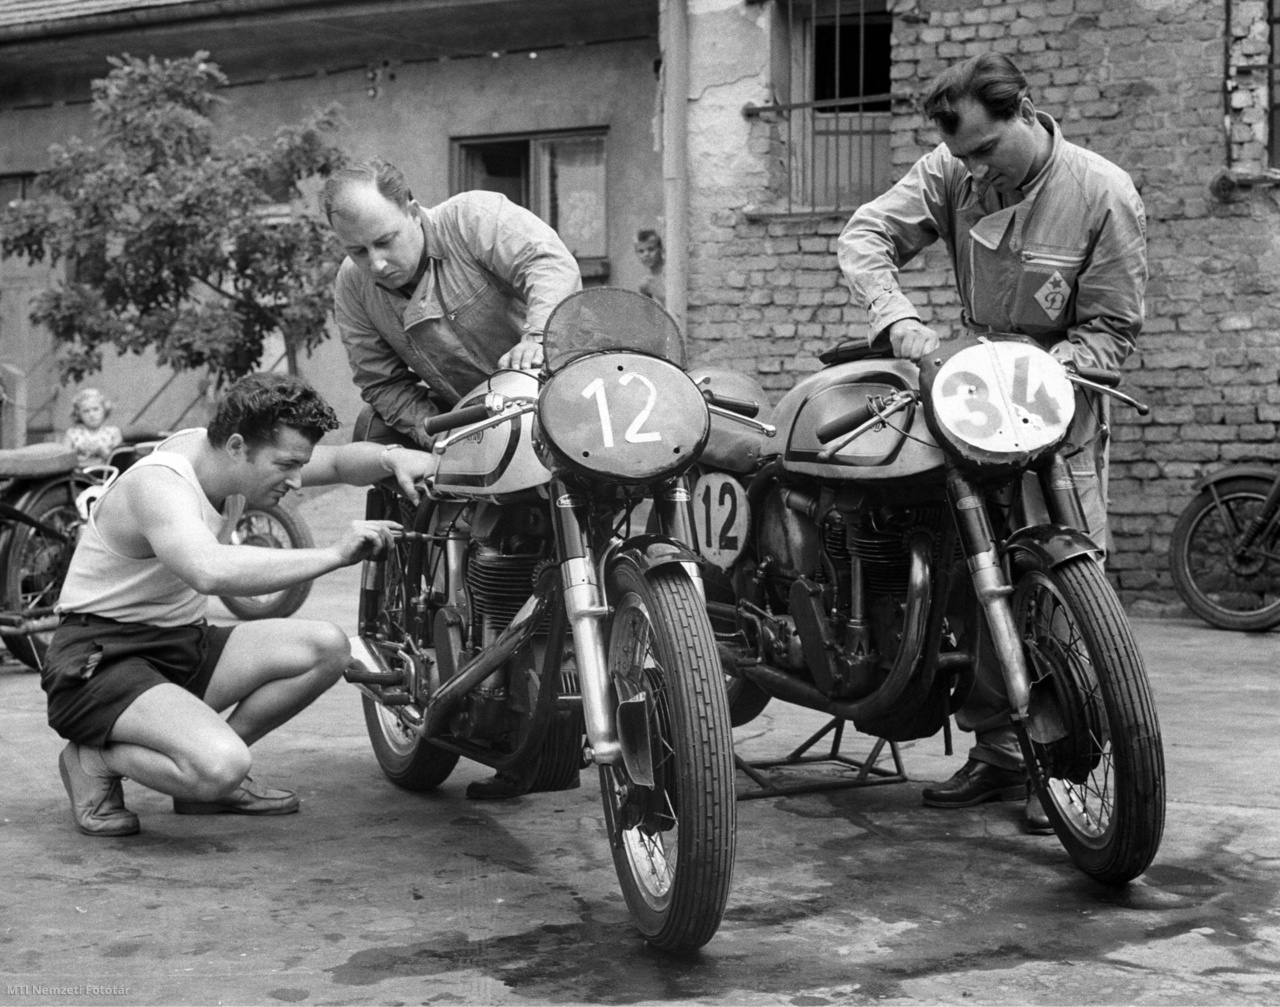 1959. július 30. Királyföldi László, Cserkuti László és Pásztor István motorversenyzők (b–j) szerelik motorkerékpárjaikat, hogy felkészüljenek a vasárnap megrendezésre kerülő Grand Prix-versenyre. A felvétel készítésének pontos helye ismeretlen.